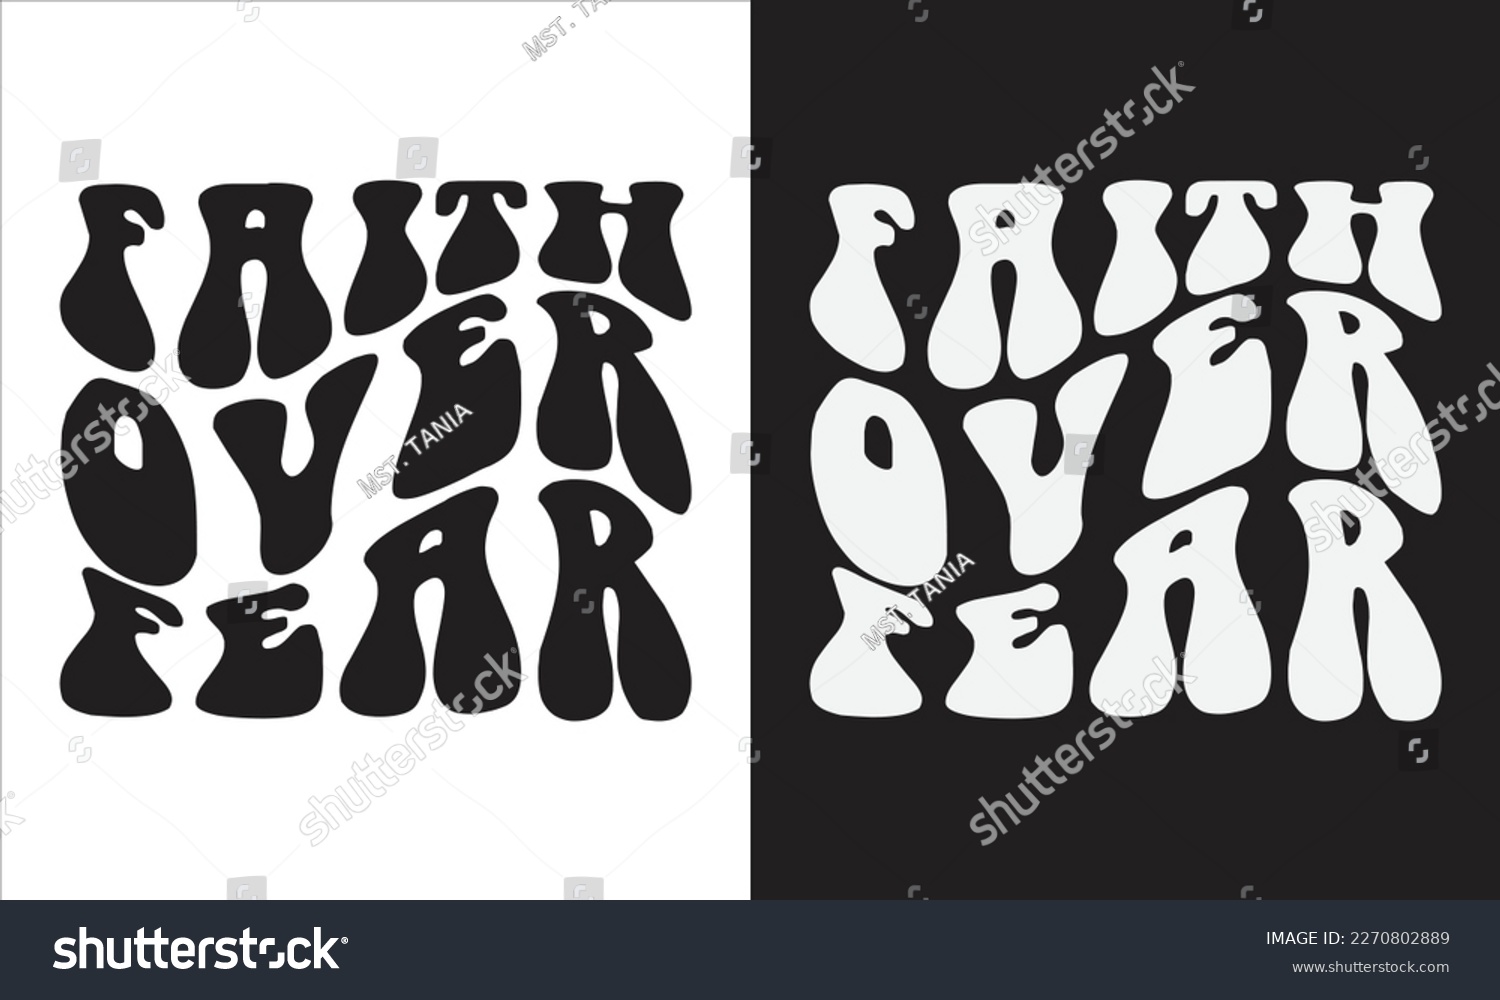 SVG of  Faith Over 
Faith Over Fear SVG, Christian Svg, Religious Svg, Faith , Motivational design, Self Love , Pray Svg, svg